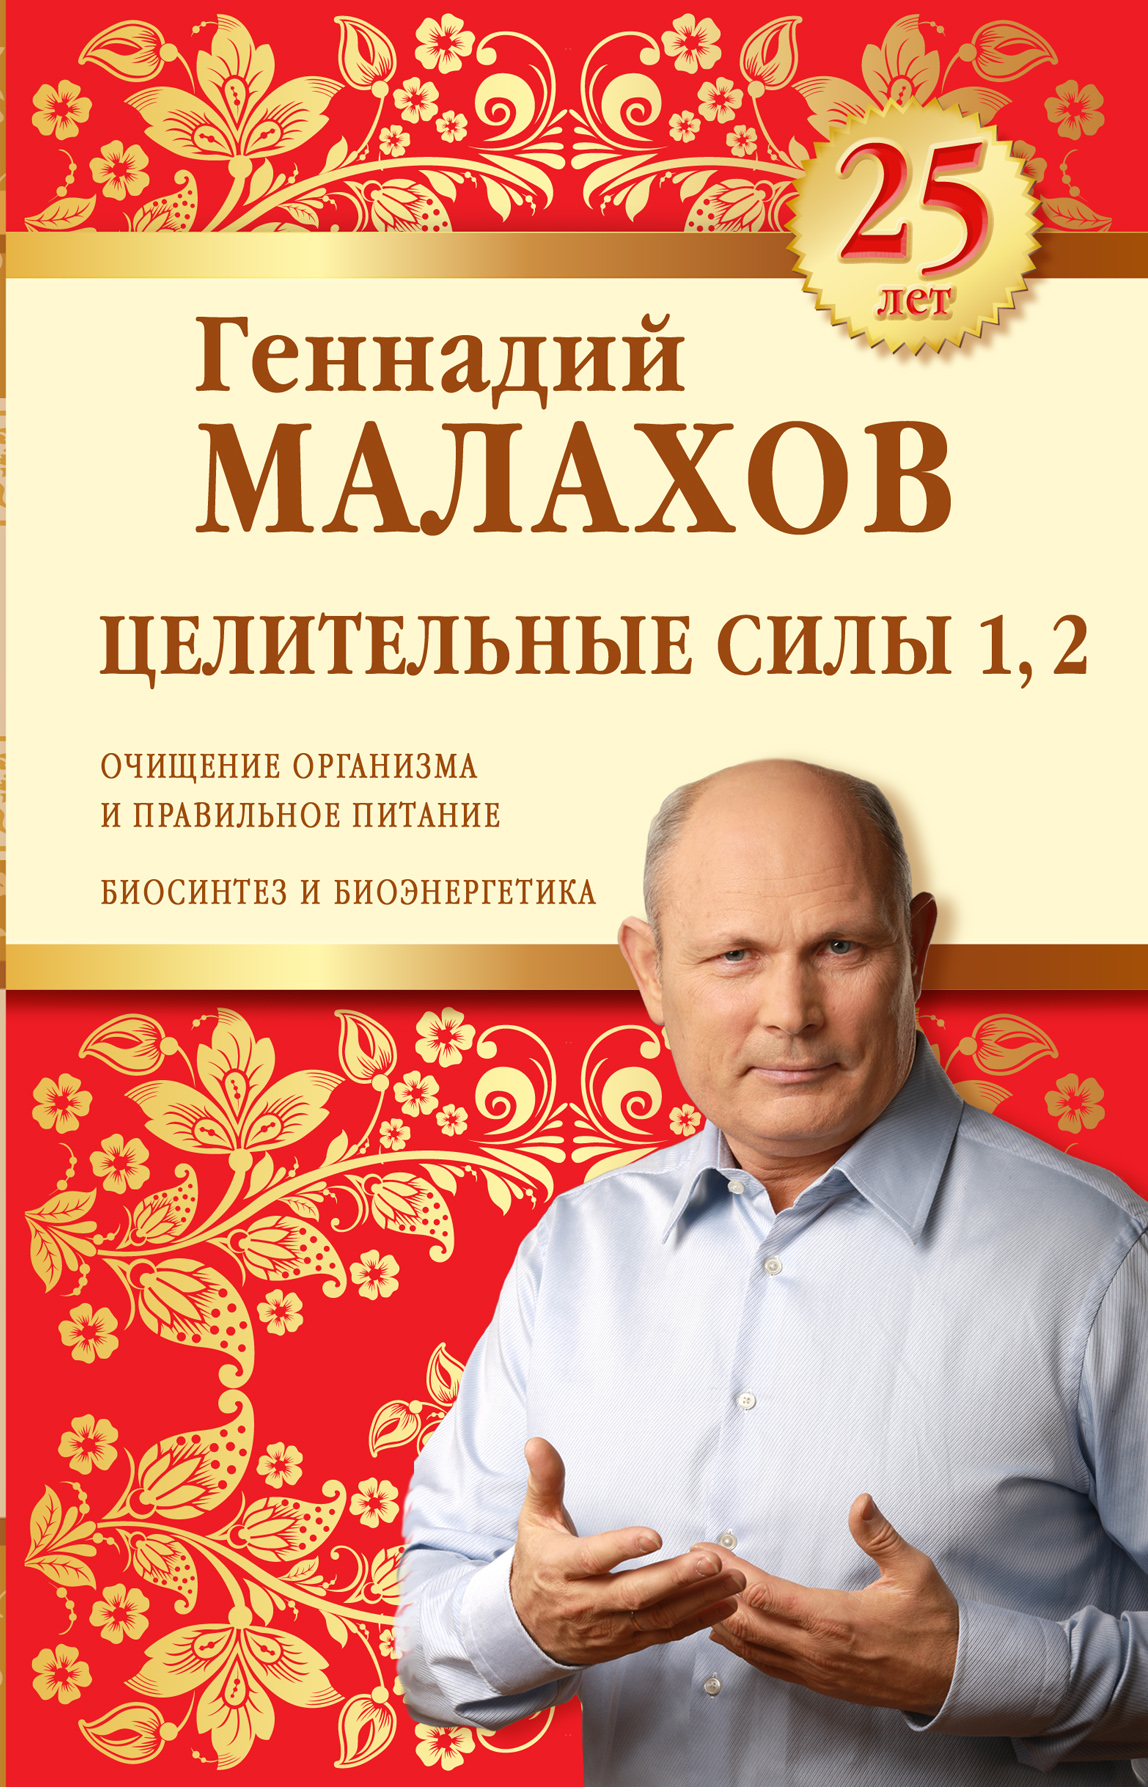 Целительные силы 1, 2. Юбилейное издание. Геннадий Малахов